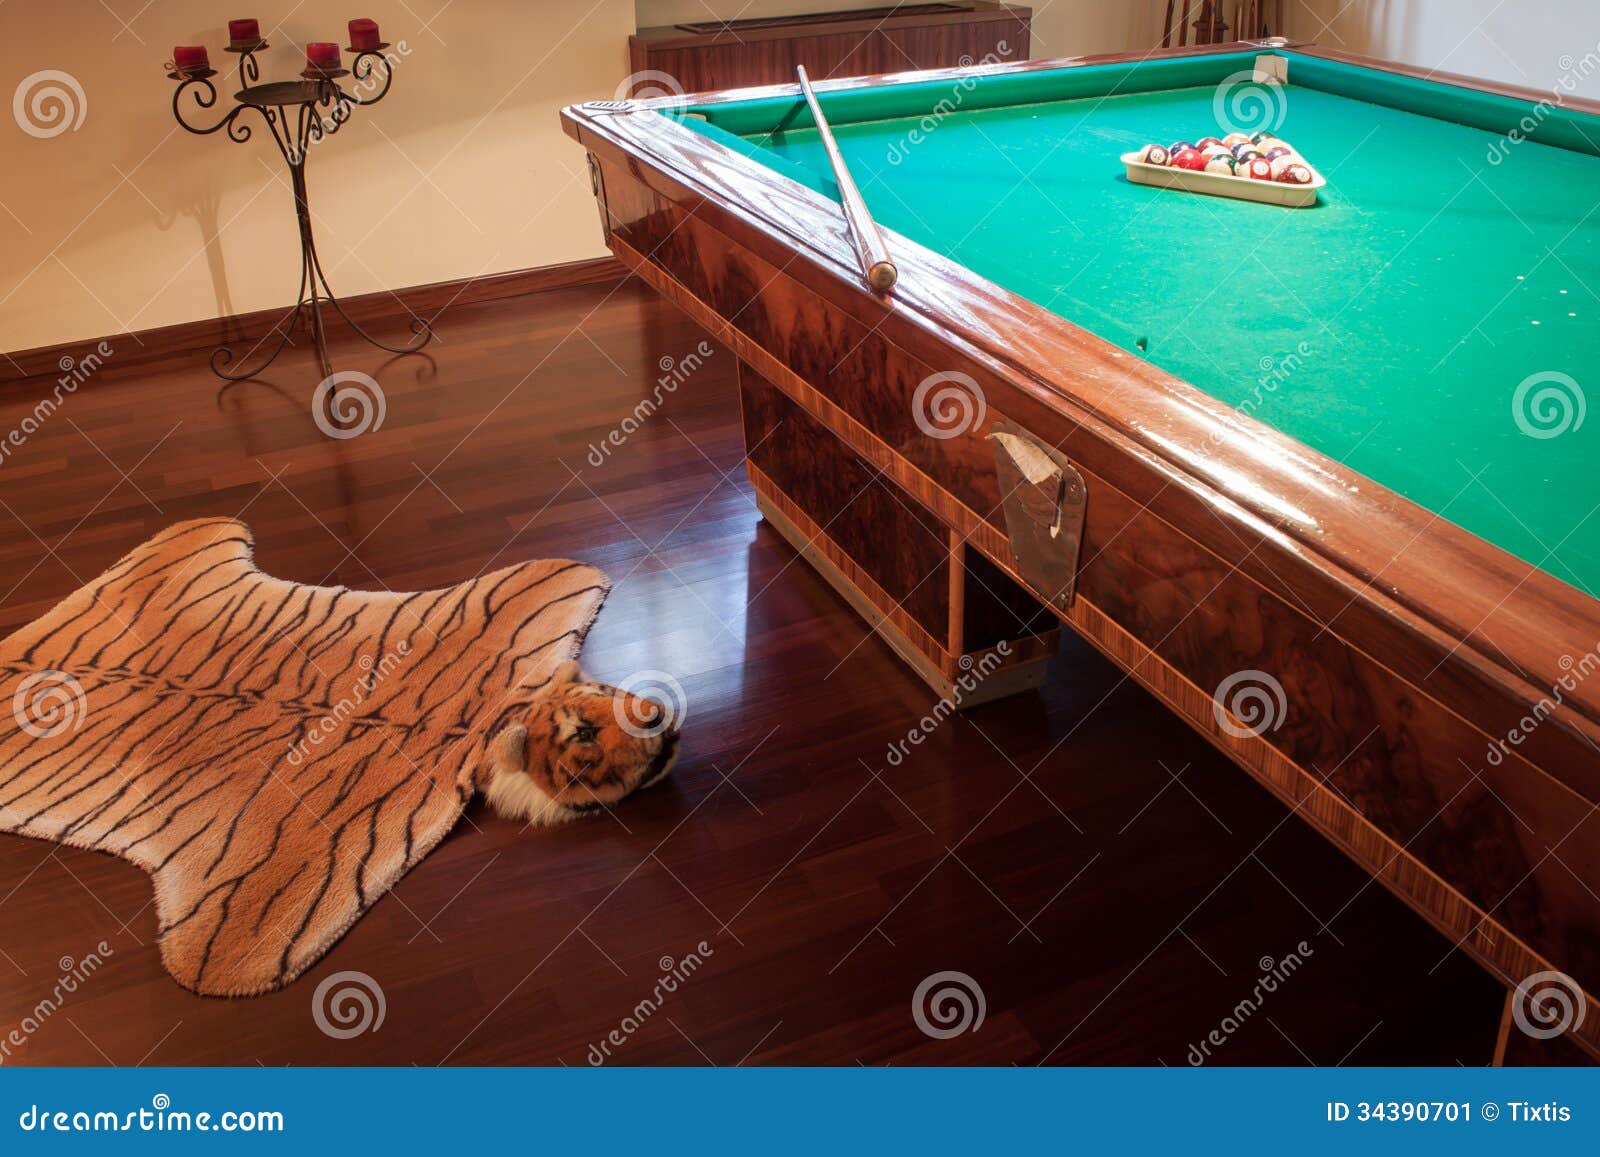 Table De Billard Avec La Fausse Couverture De Peau De Tigre Image stock -  Image du tigre, architectural: 34390701